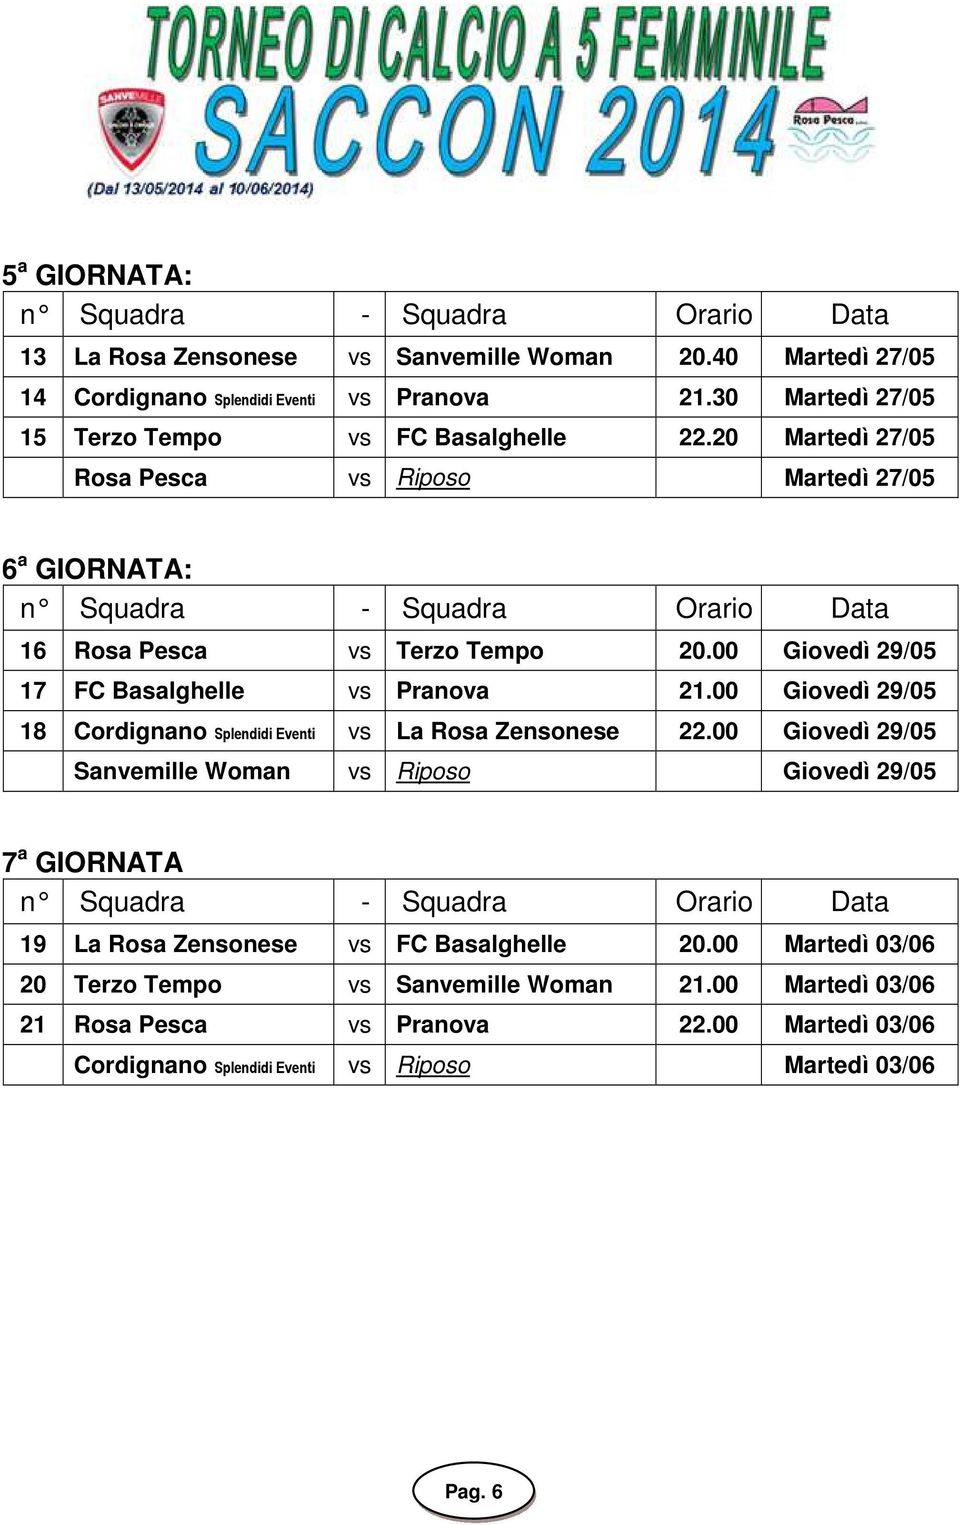 00 Giovedì 29/05 17 FC Basalghelle vs Pranova 21.00 Giovedì 29/05 18 Cordignano Splendidi Eventi vs La Rosa Zensonese 22.